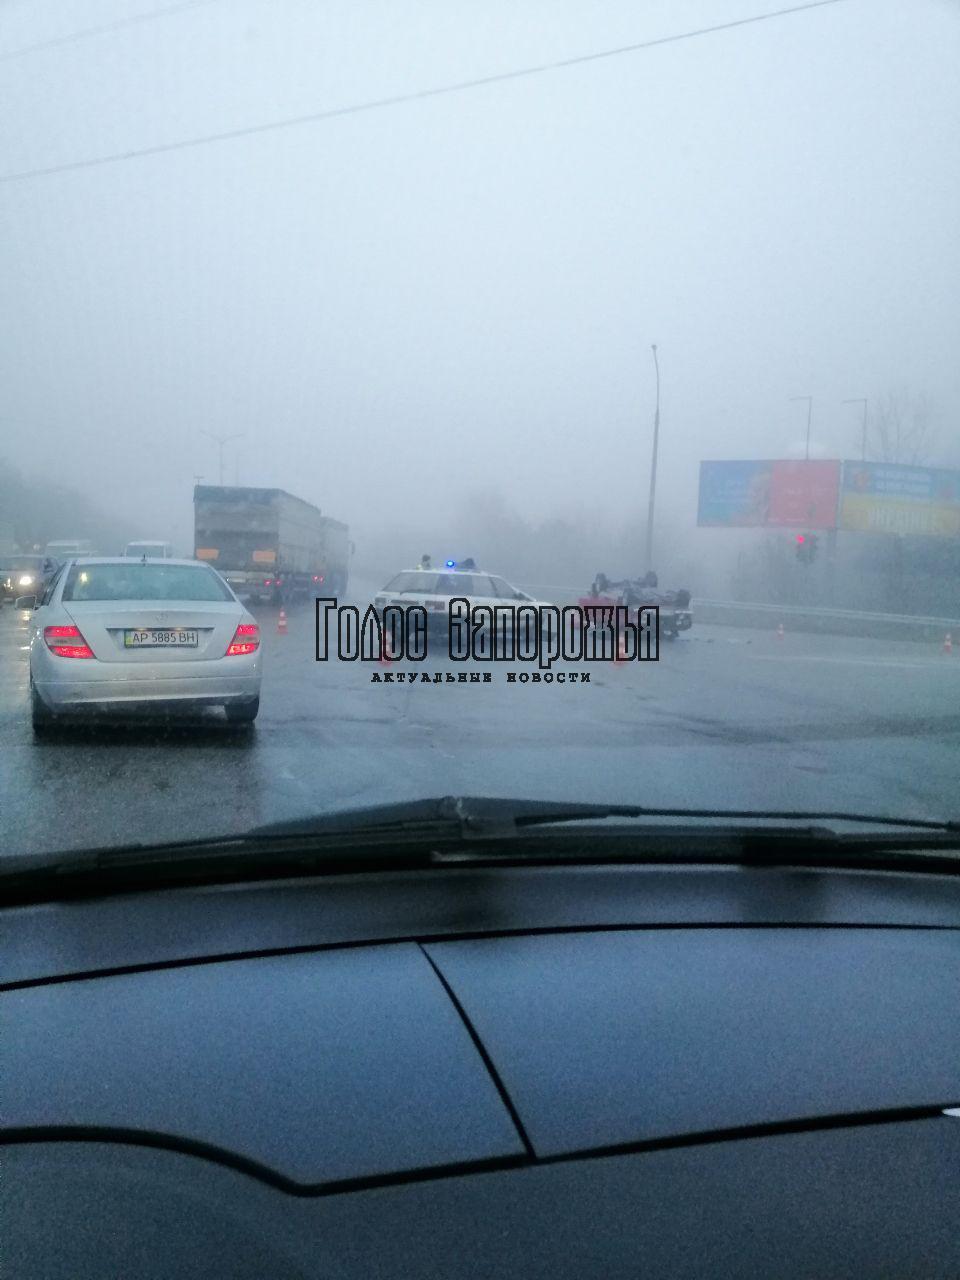 ДТП в тумане: около запорожского аэропорта произошла авария, авто перевернулось (ФОТО)